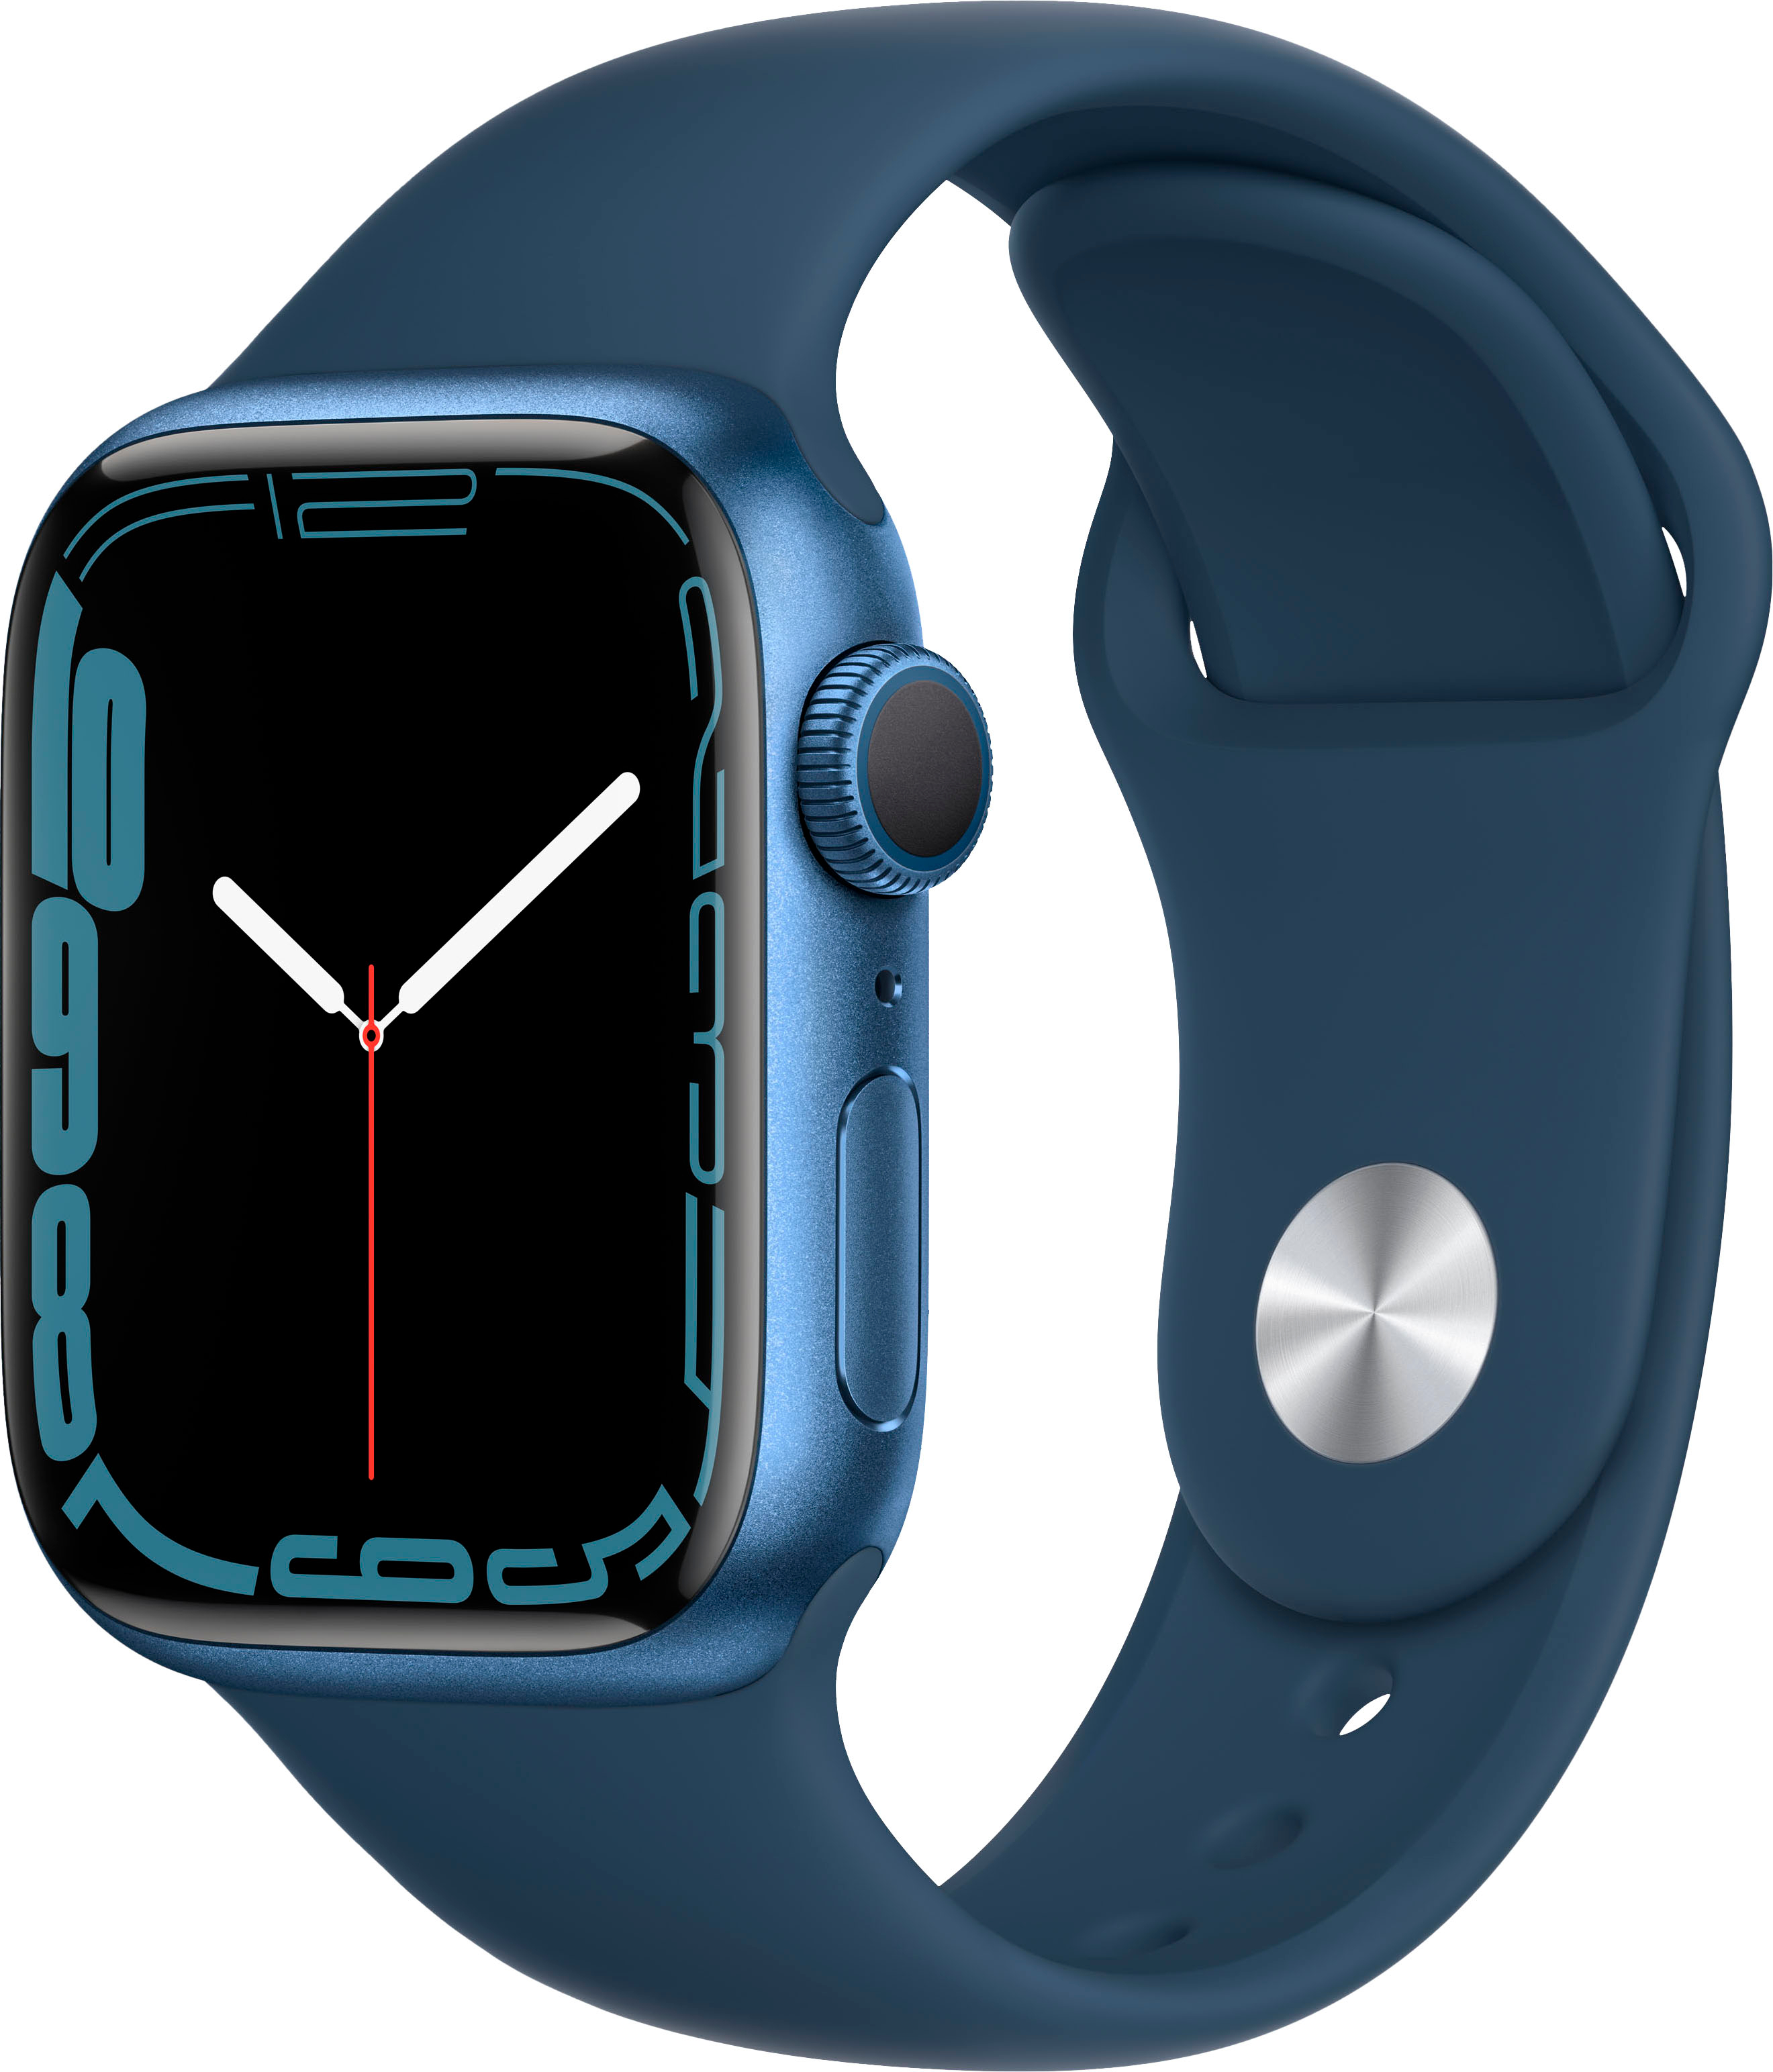 Best Buy: Geek Squad Certified Refurbished Apple Watch Series 3